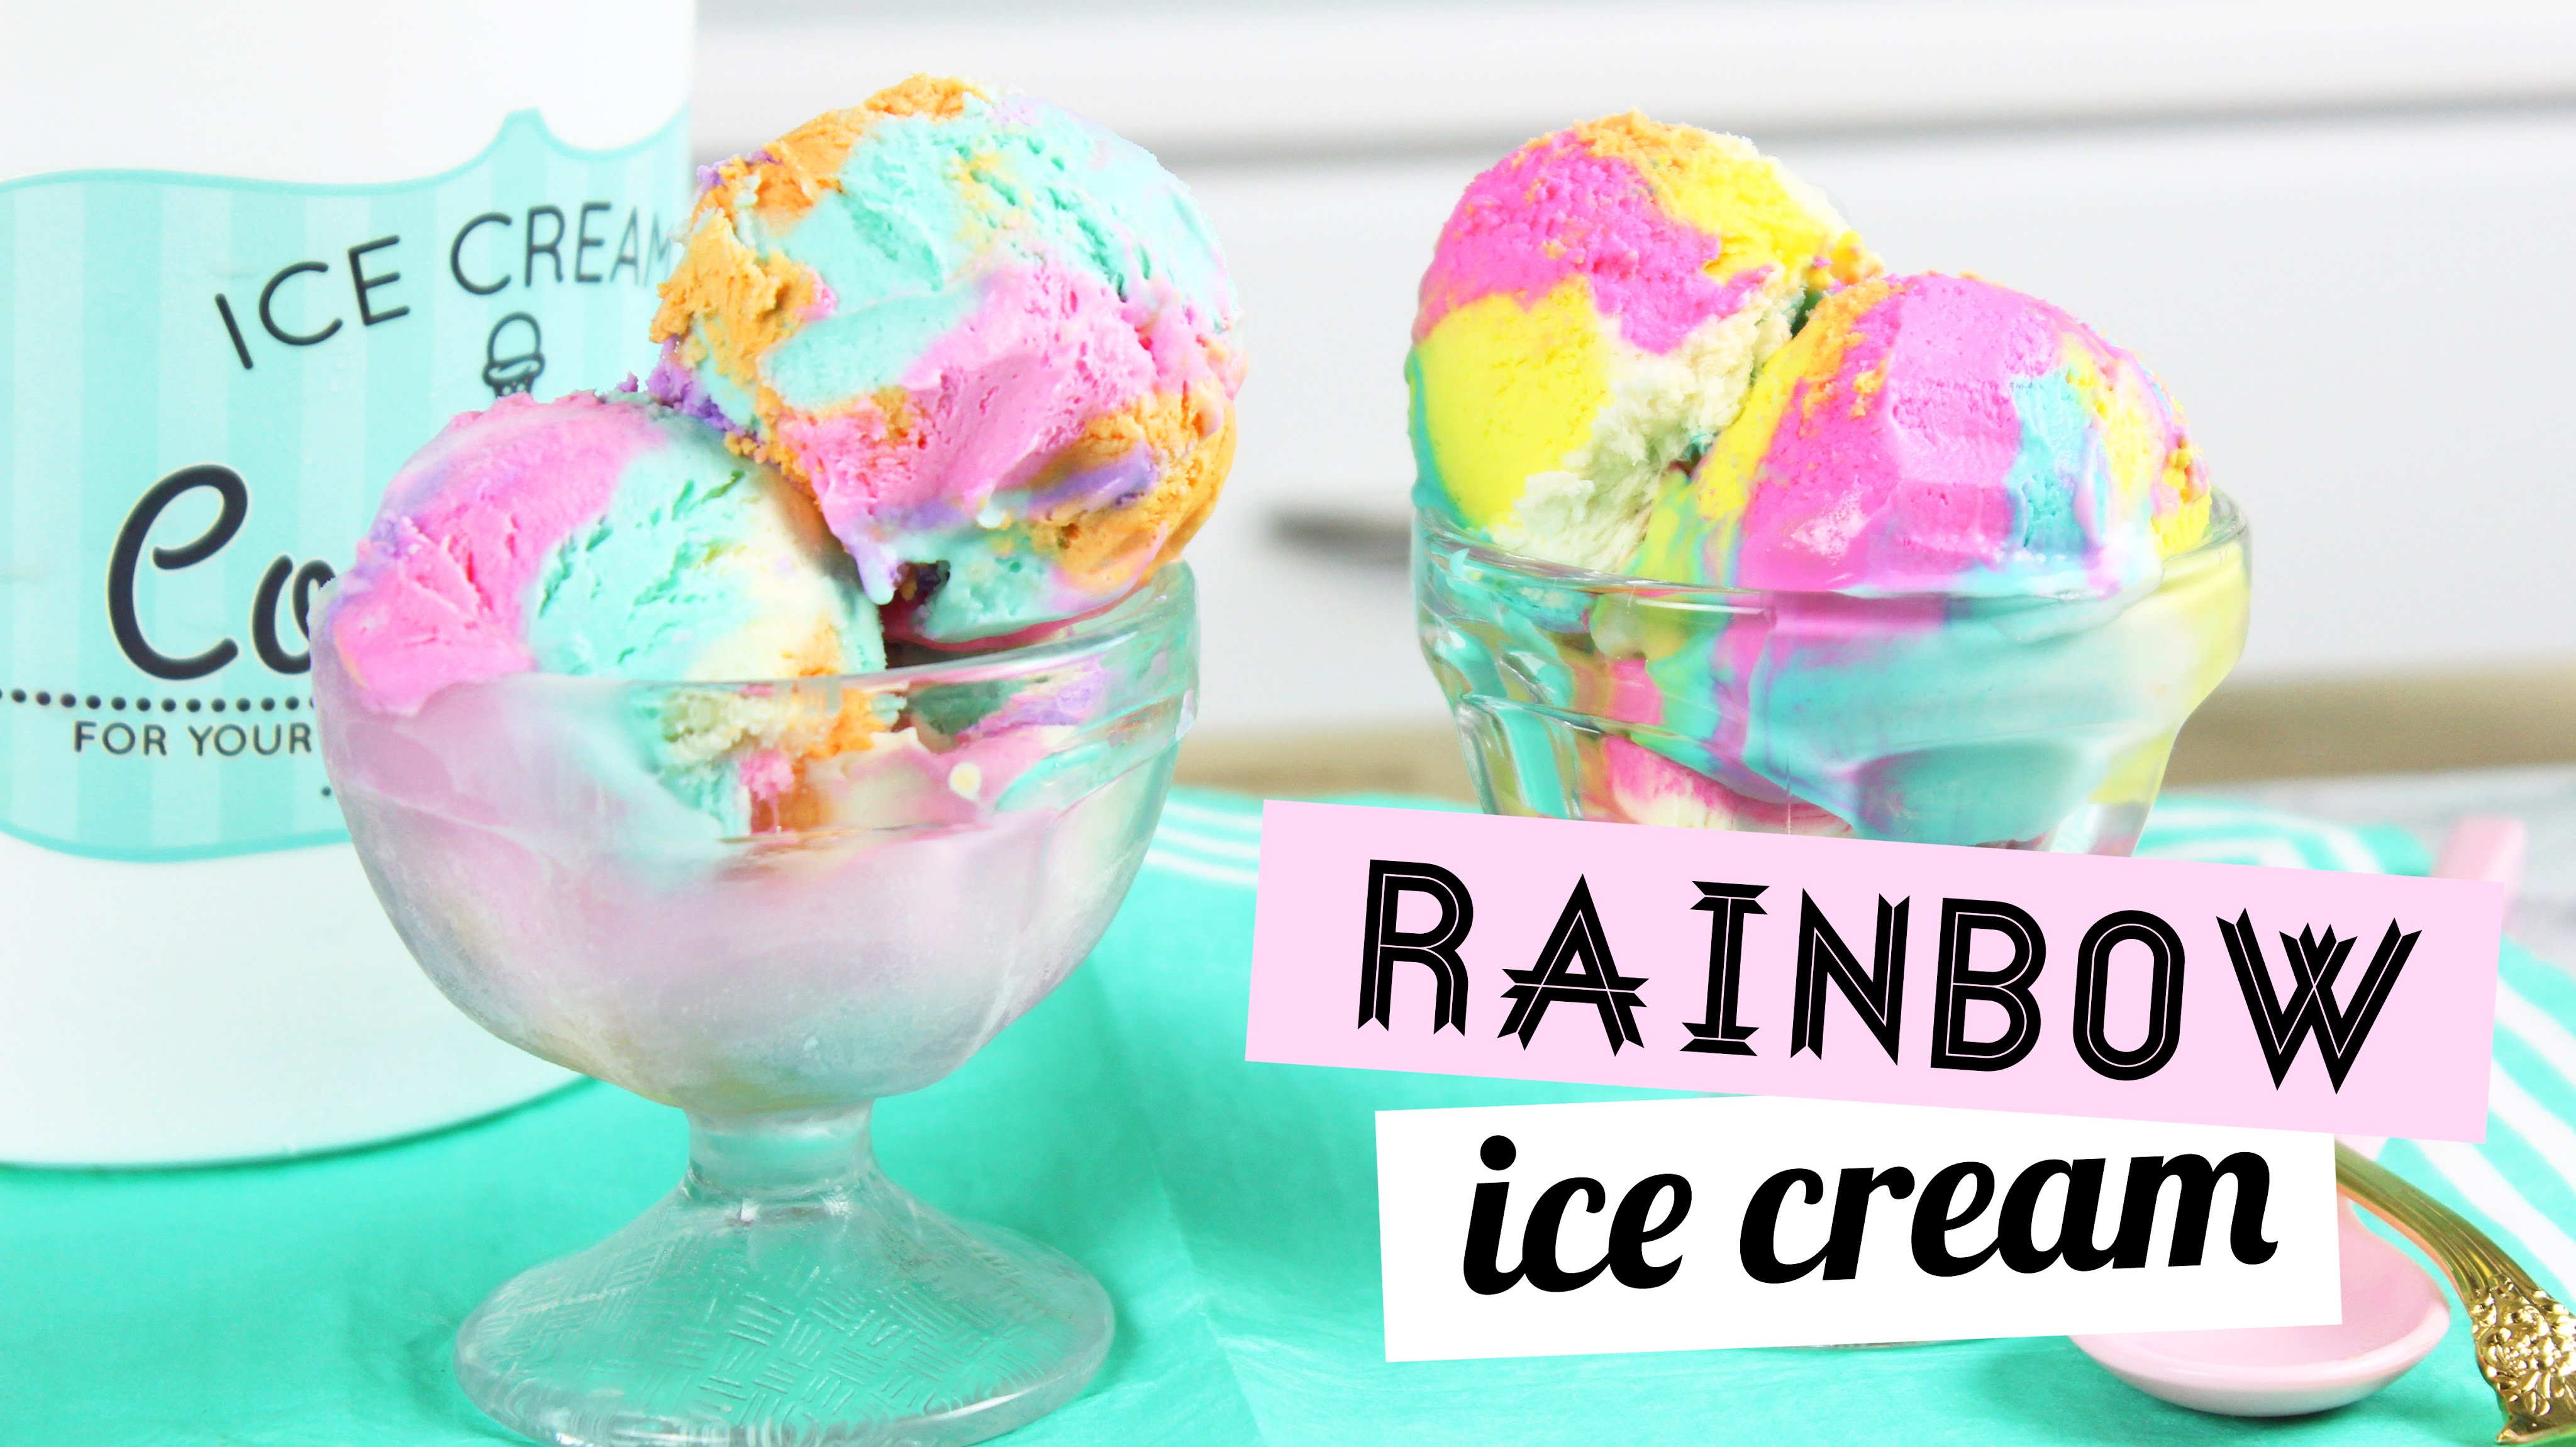 How to Make Rainbow Ice Cream (No Machine)! - YouTube